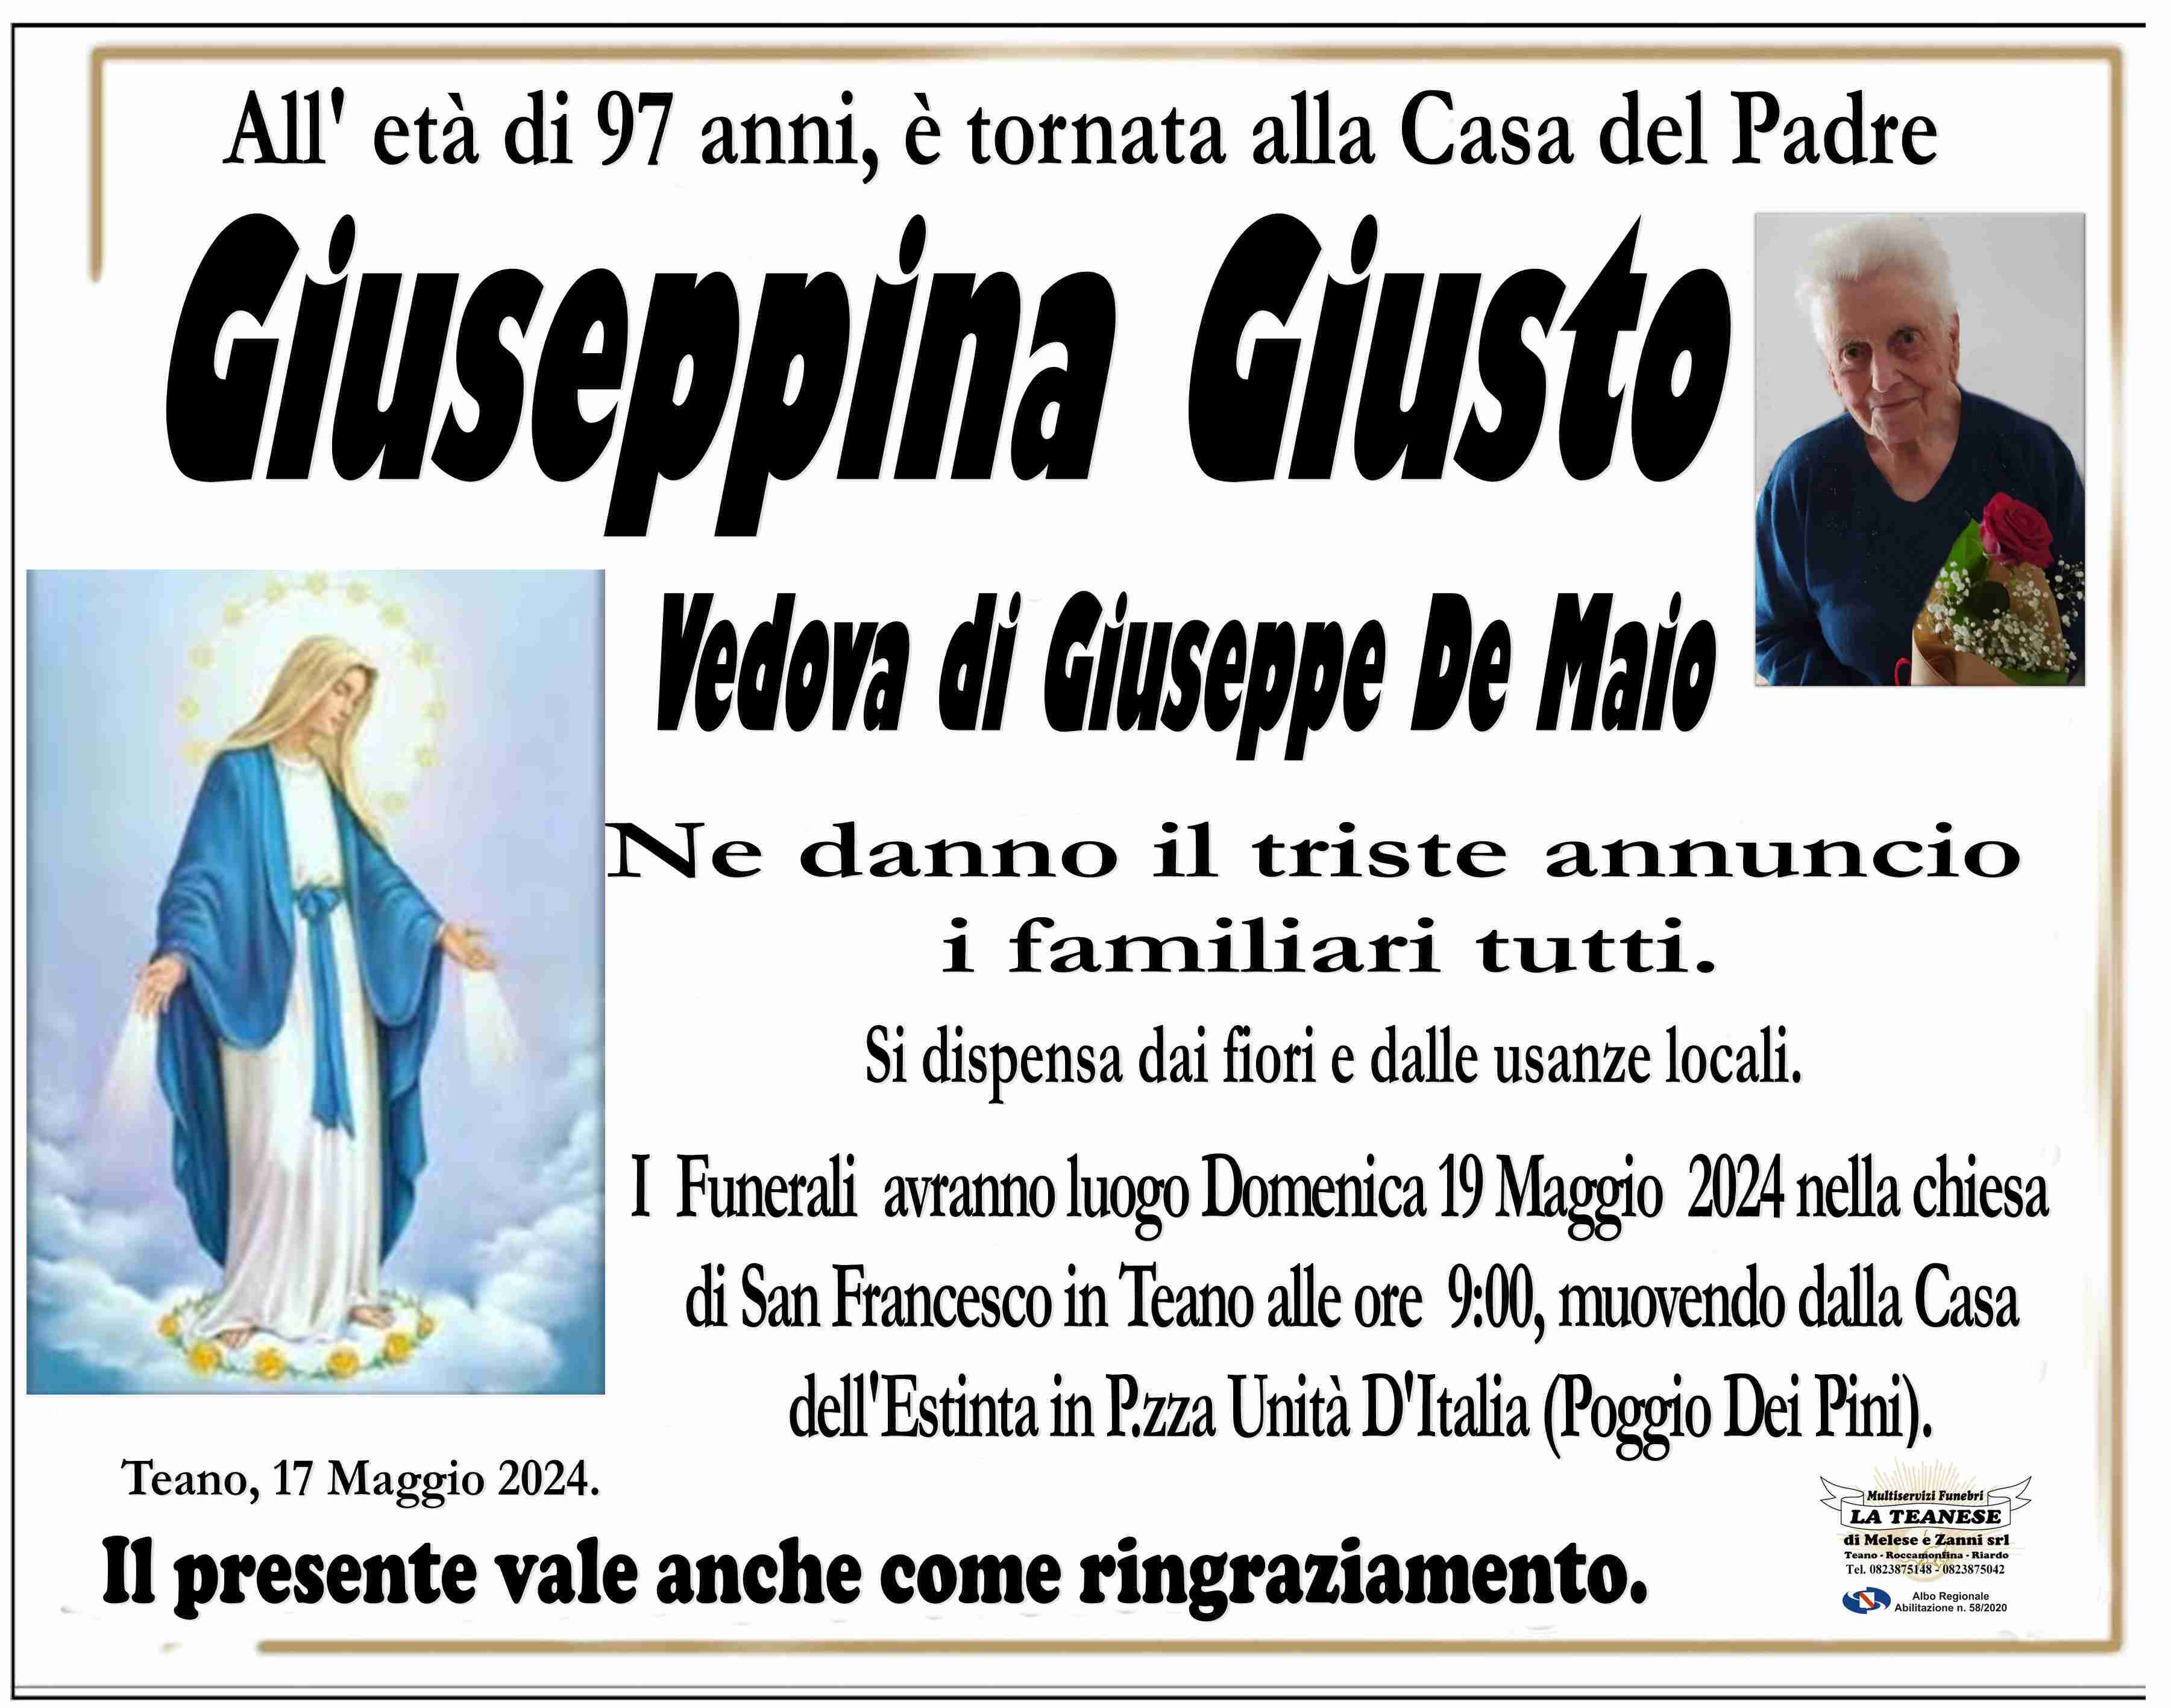 Giuseppina Giusto